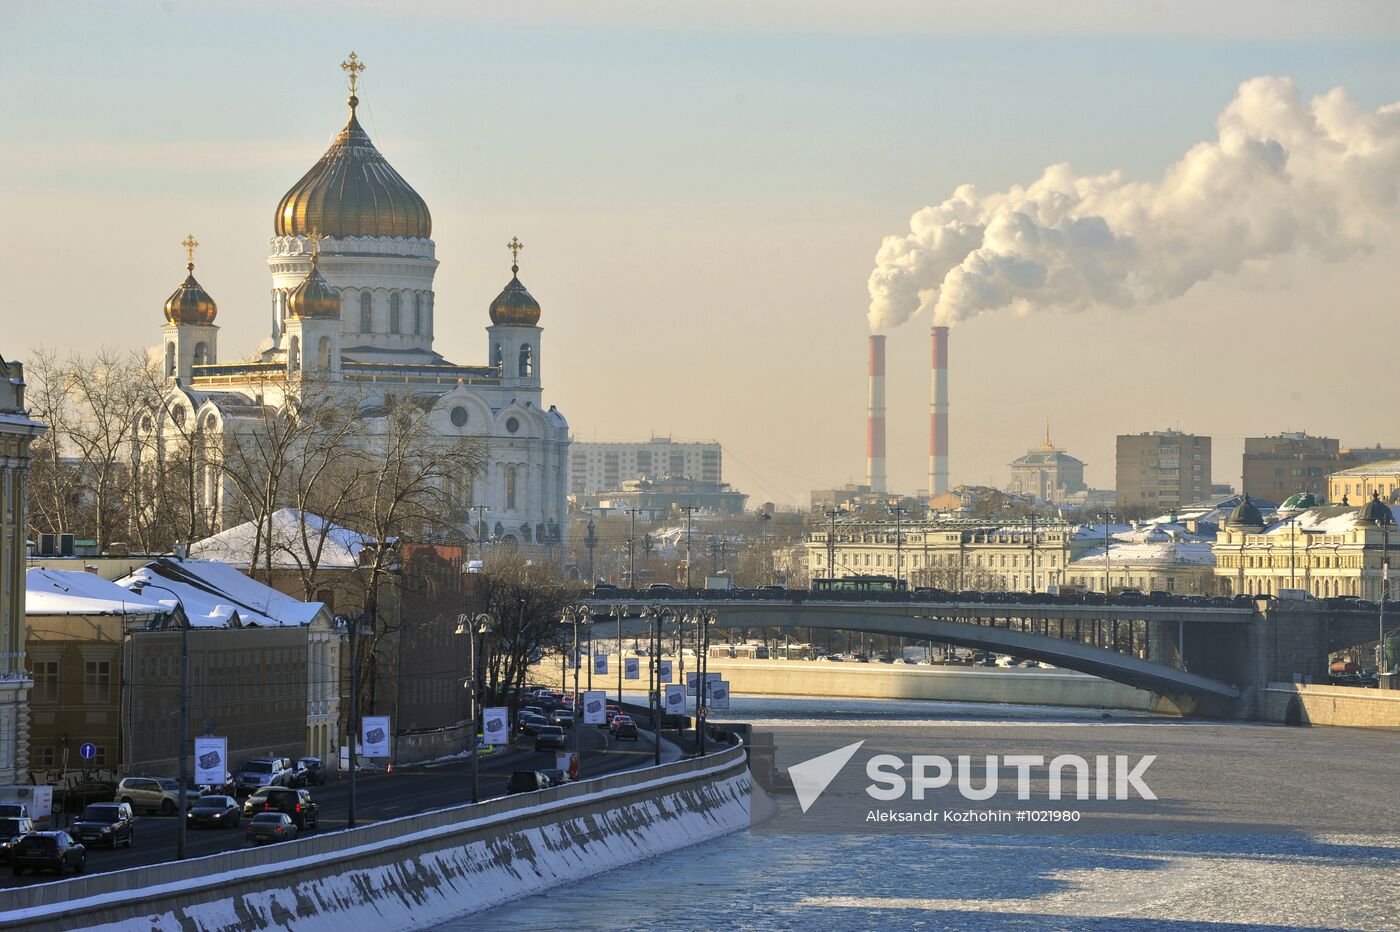 Subzero temperatures in Moscow